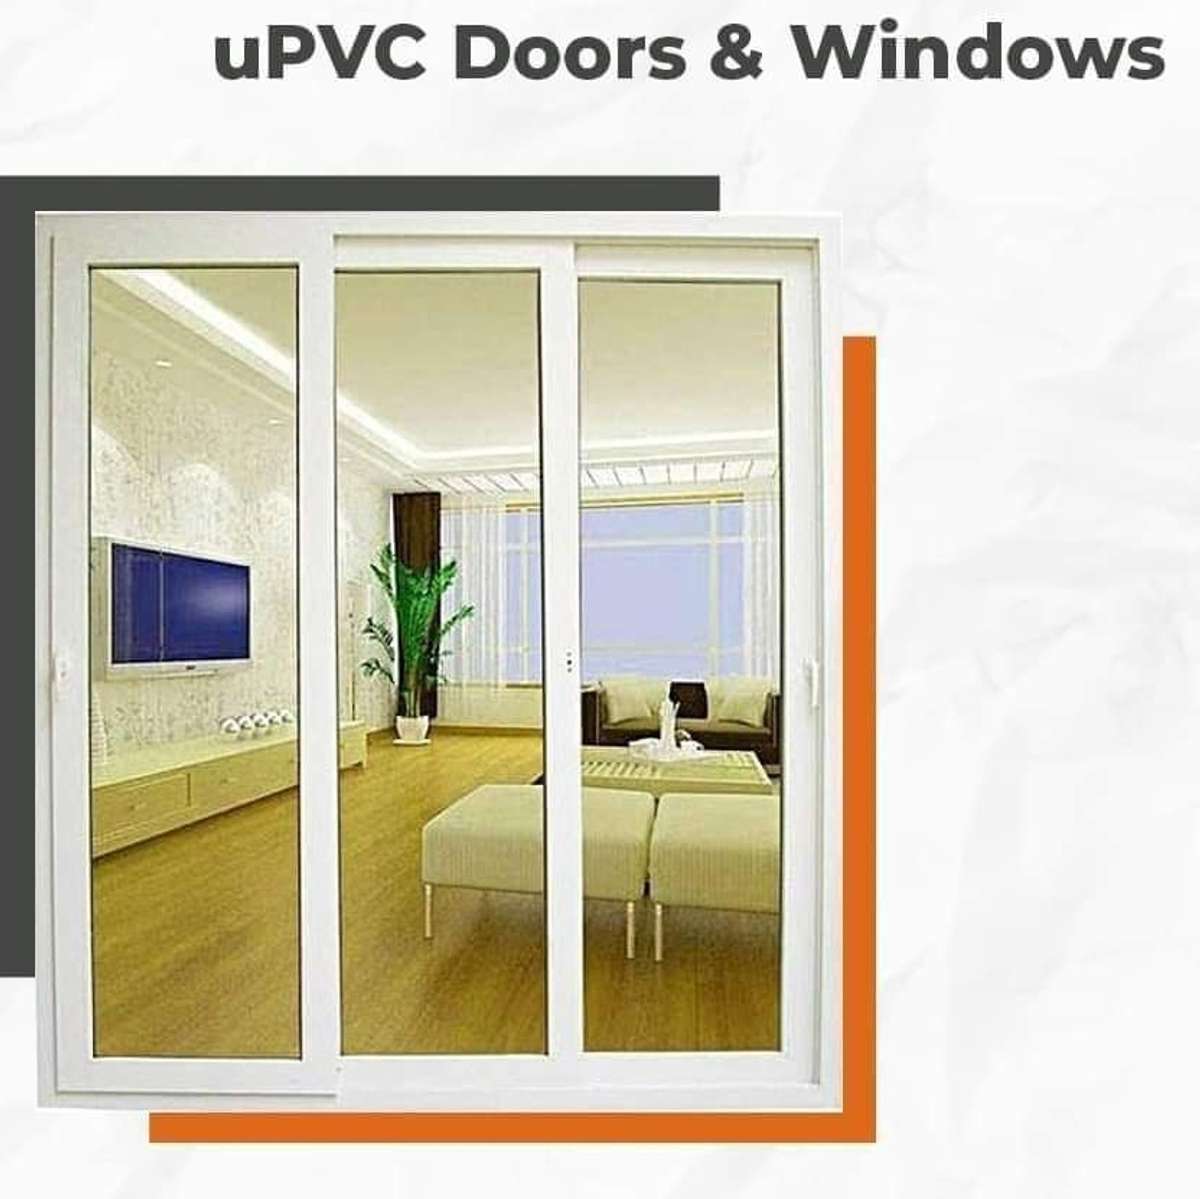 my upvc door windows work best 9891491399